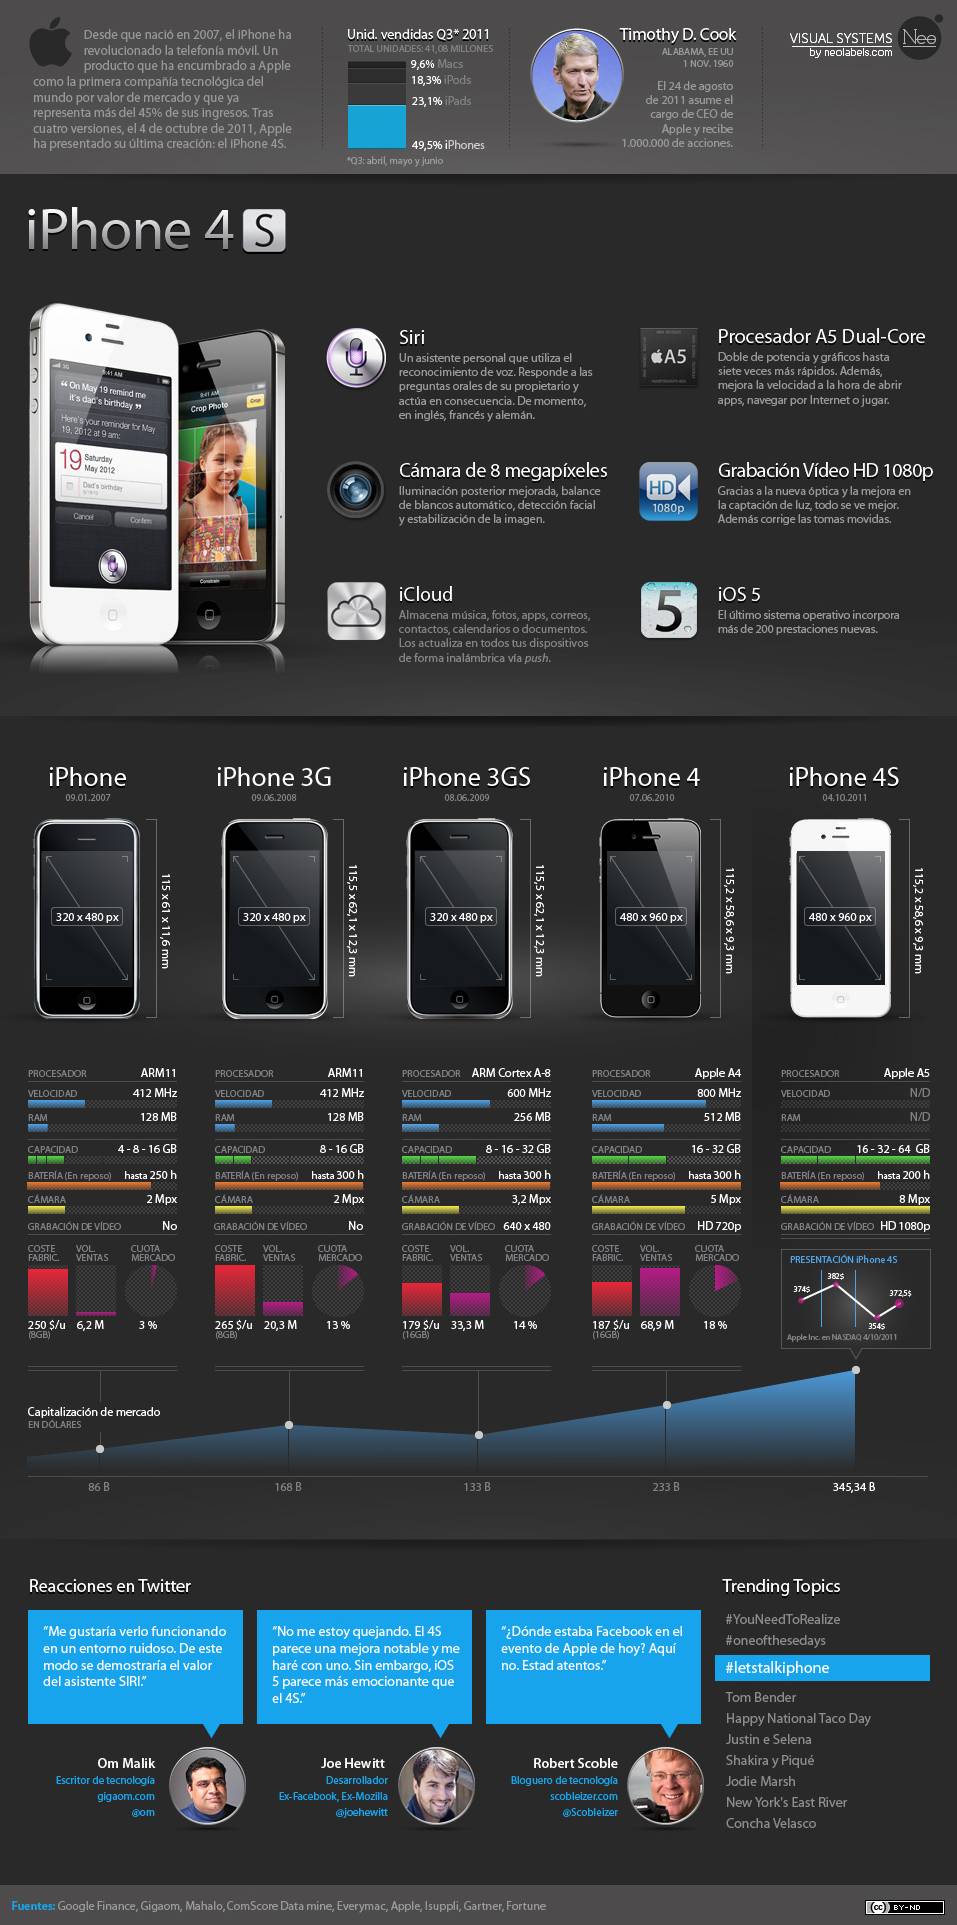 Todo lo que necesitas saber sobre el iPhone 4S #Infografía en español 1